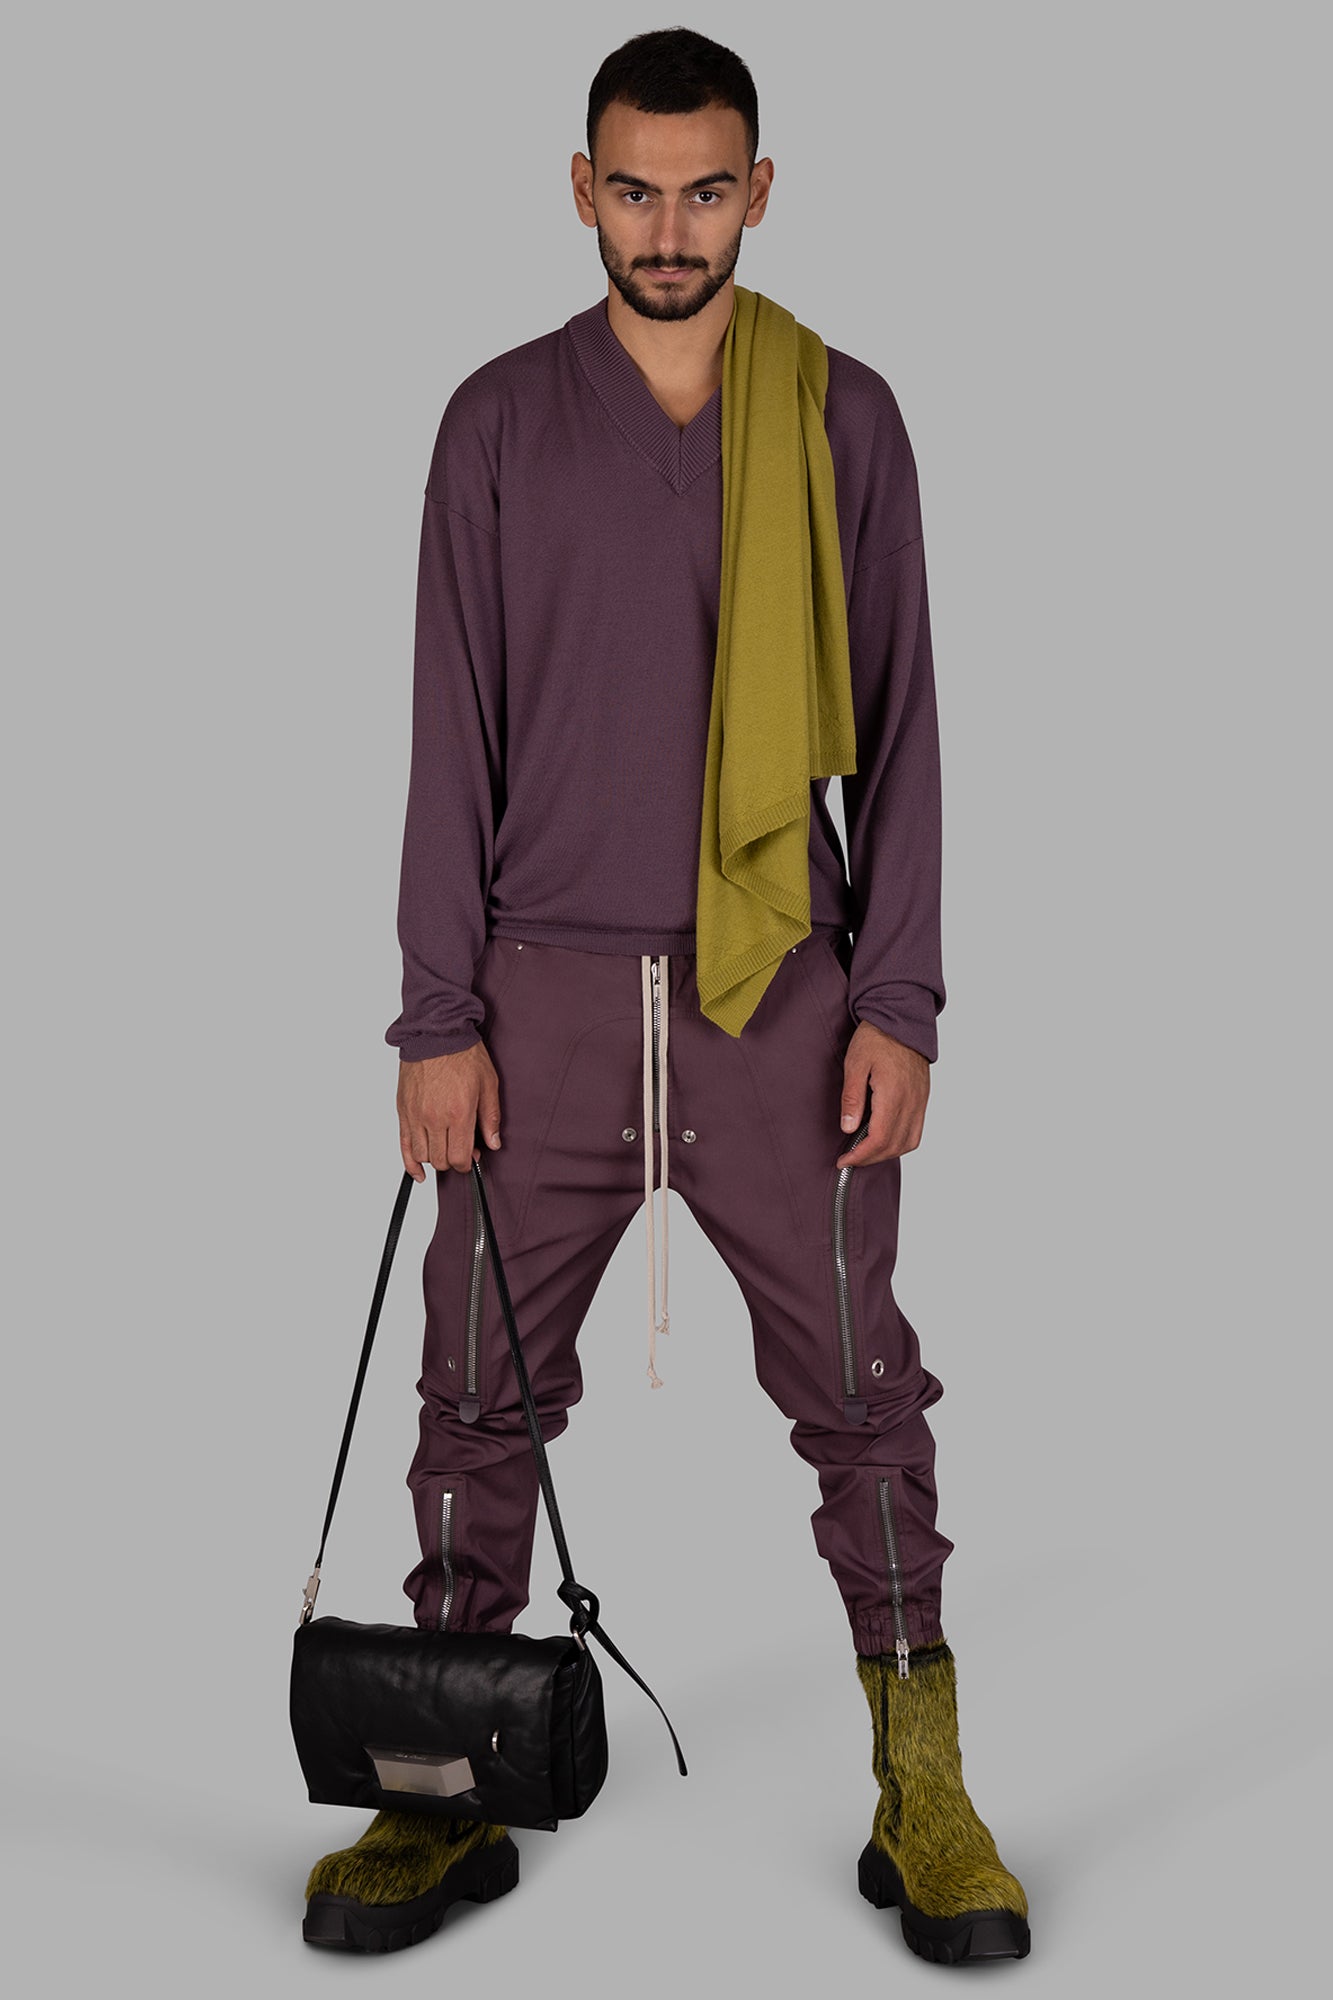 Purple V-Neck Sweater